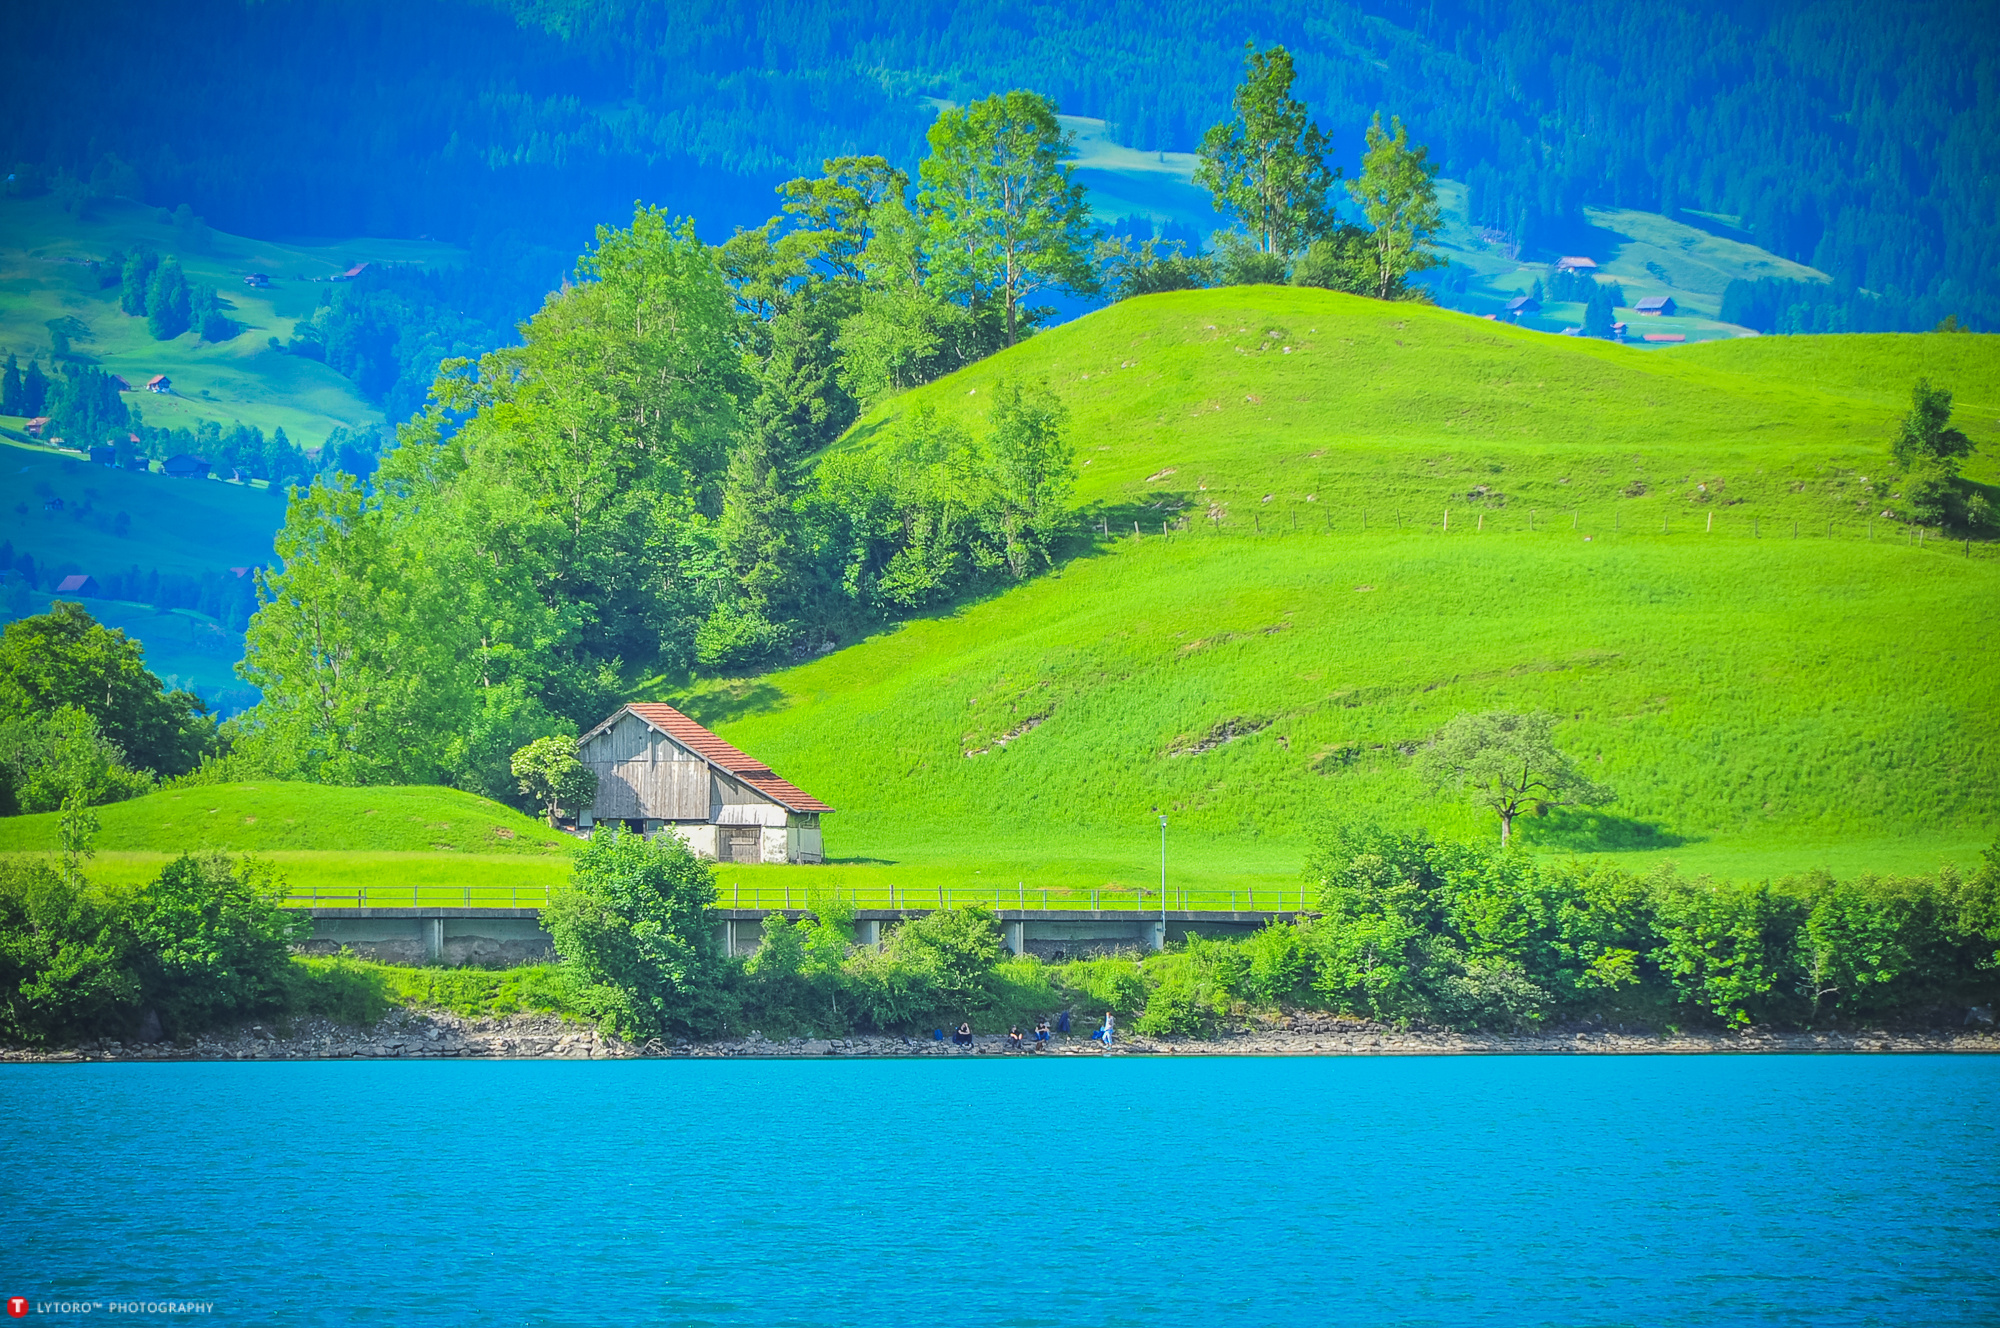 自然景观 瑞士小镇 田园 绿草 风景大片壁纸(风景静态壁纸) - 静态壁纸下载 - 元气壁纸